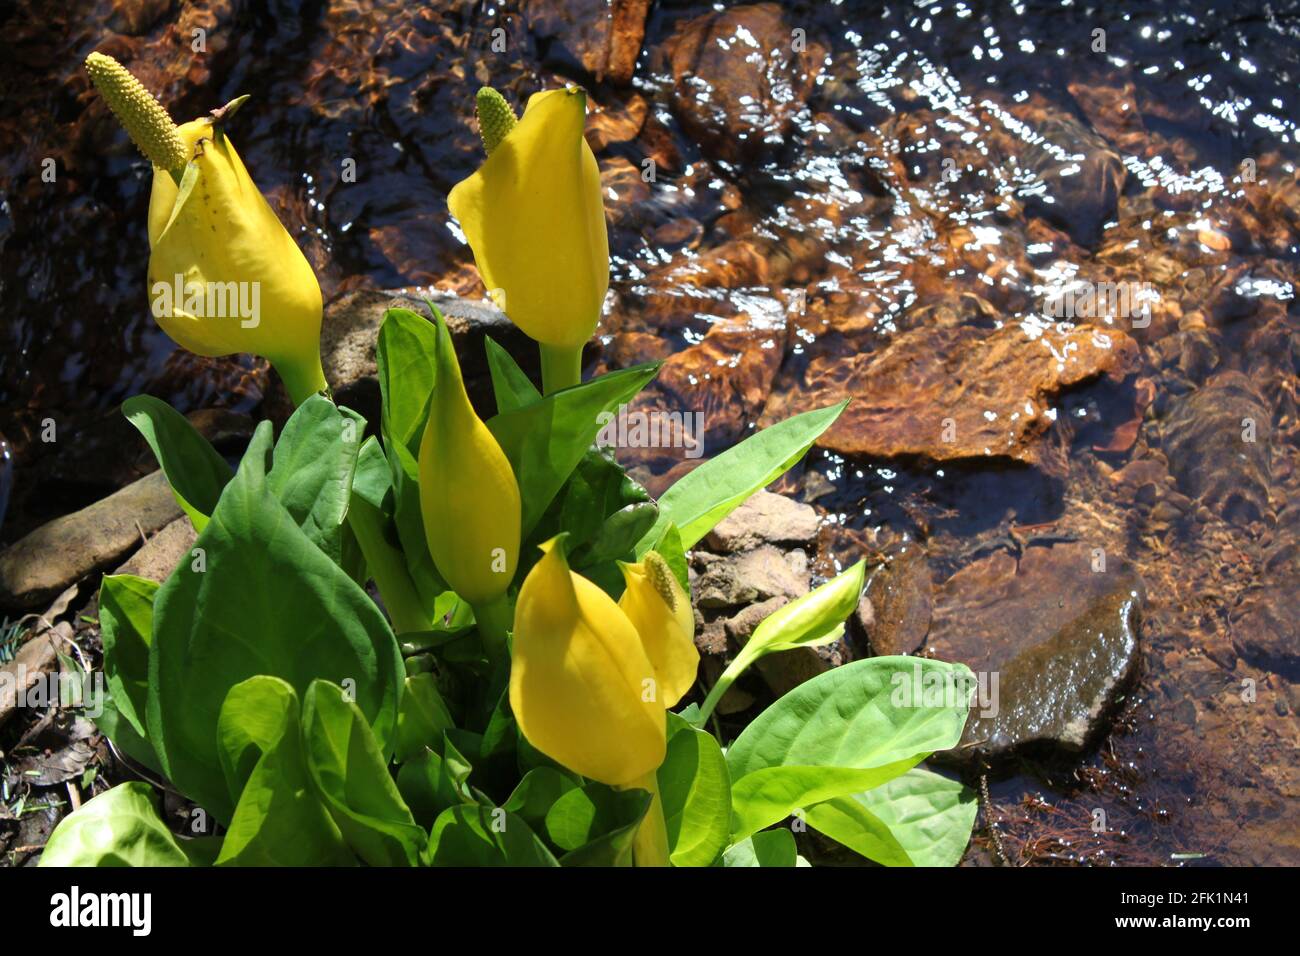 Skunk-Kohl (Symplocarpus foetidus) durch eine kleine, laufende Frischwasserquelle. Gelbe Blumen in städtischen Grünflächen und lokalen Parks eingefangen. Frühling Großbritannien. Stockfoto